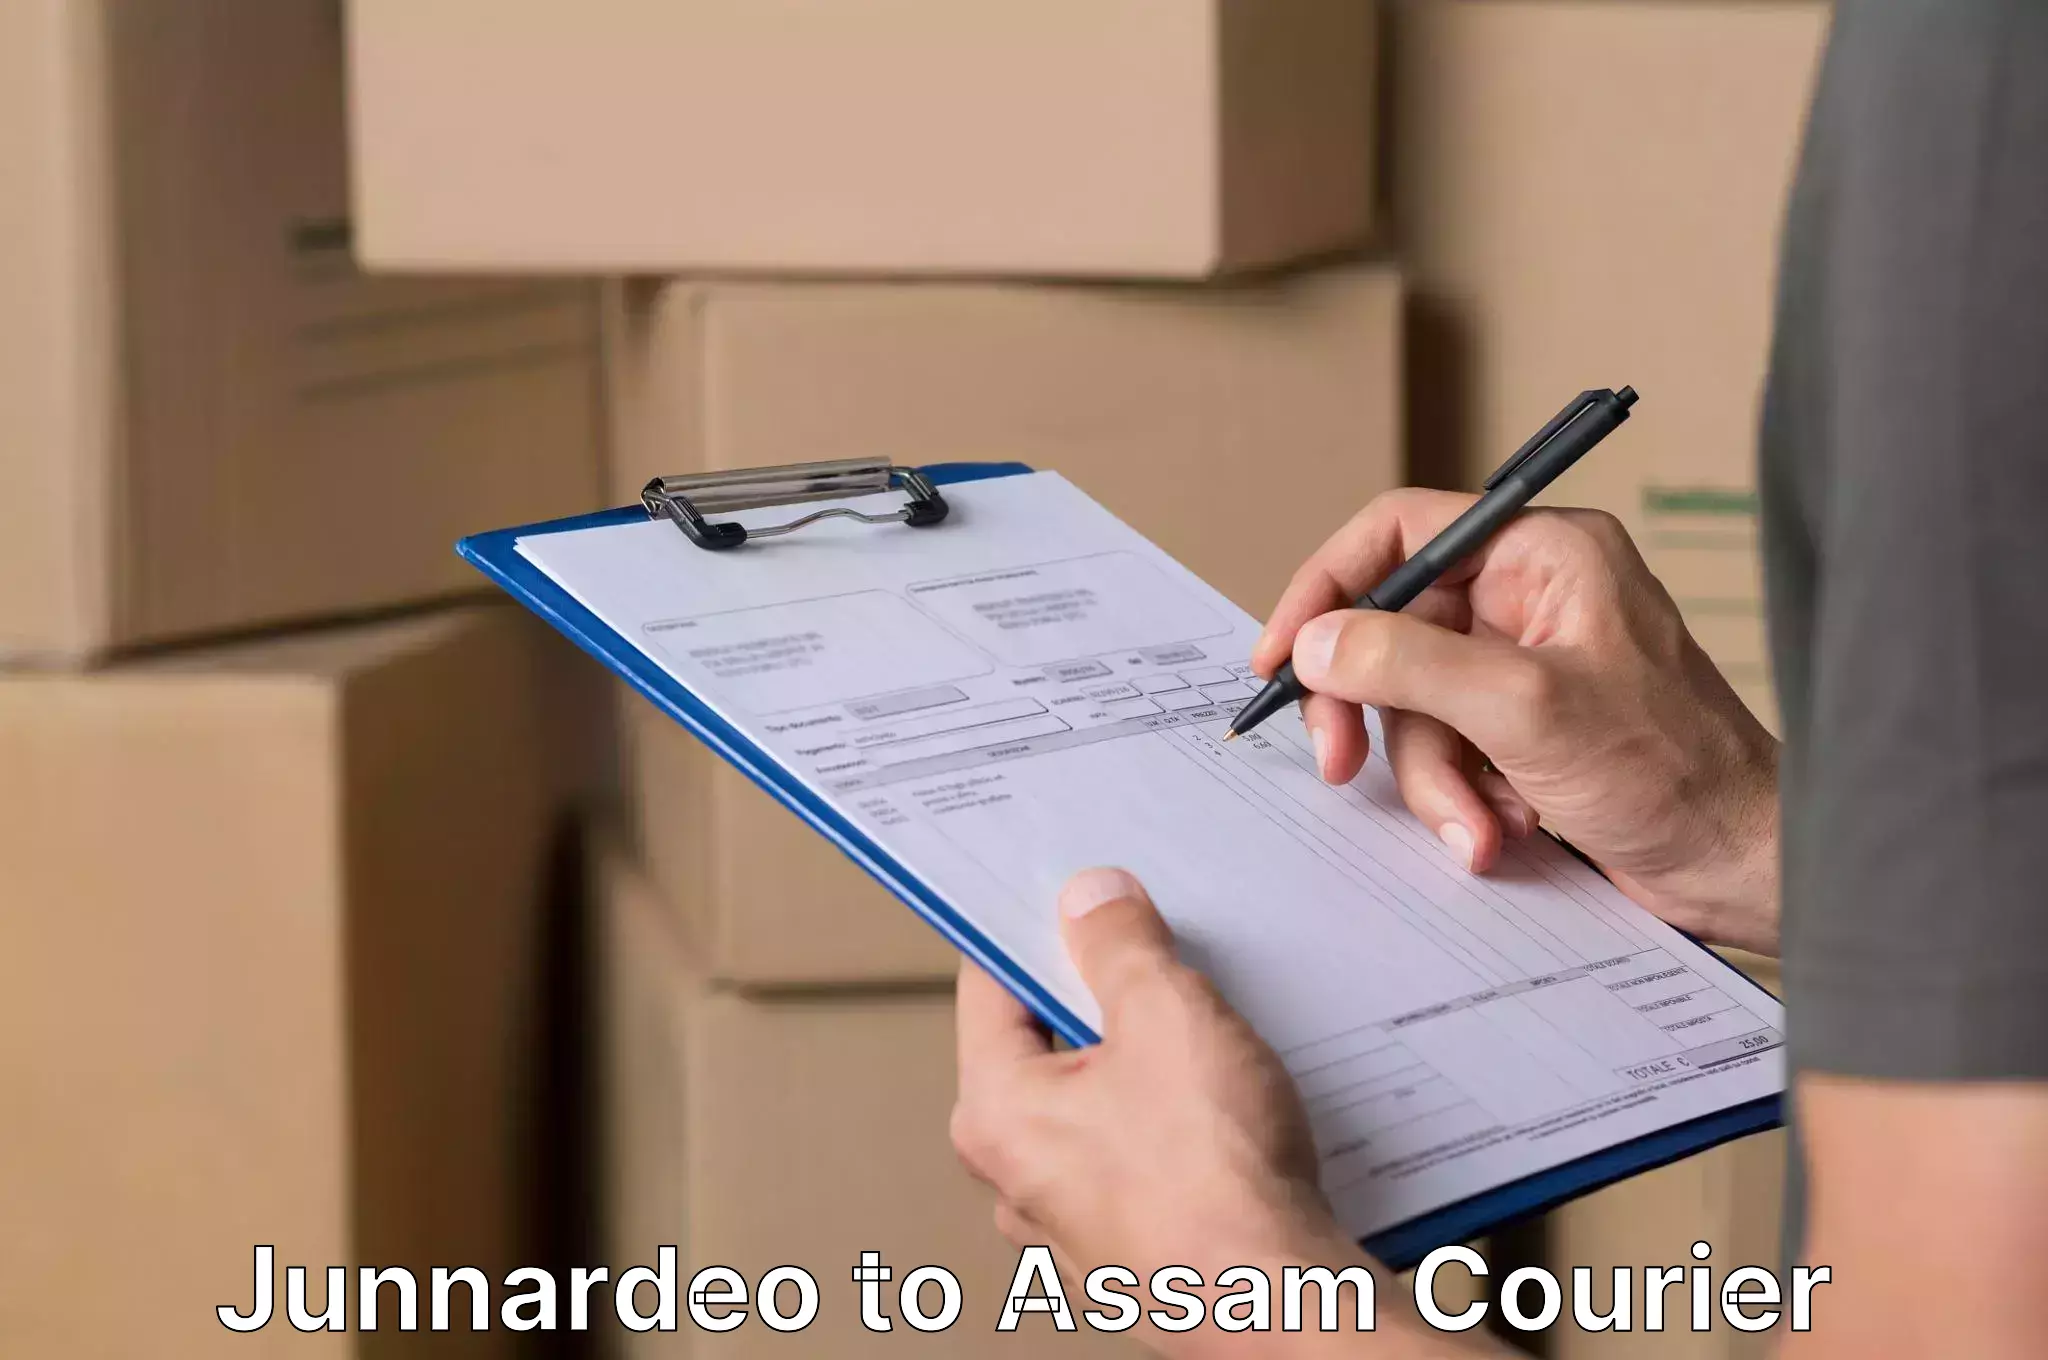 Expert goods movers Junnardeo to Assam